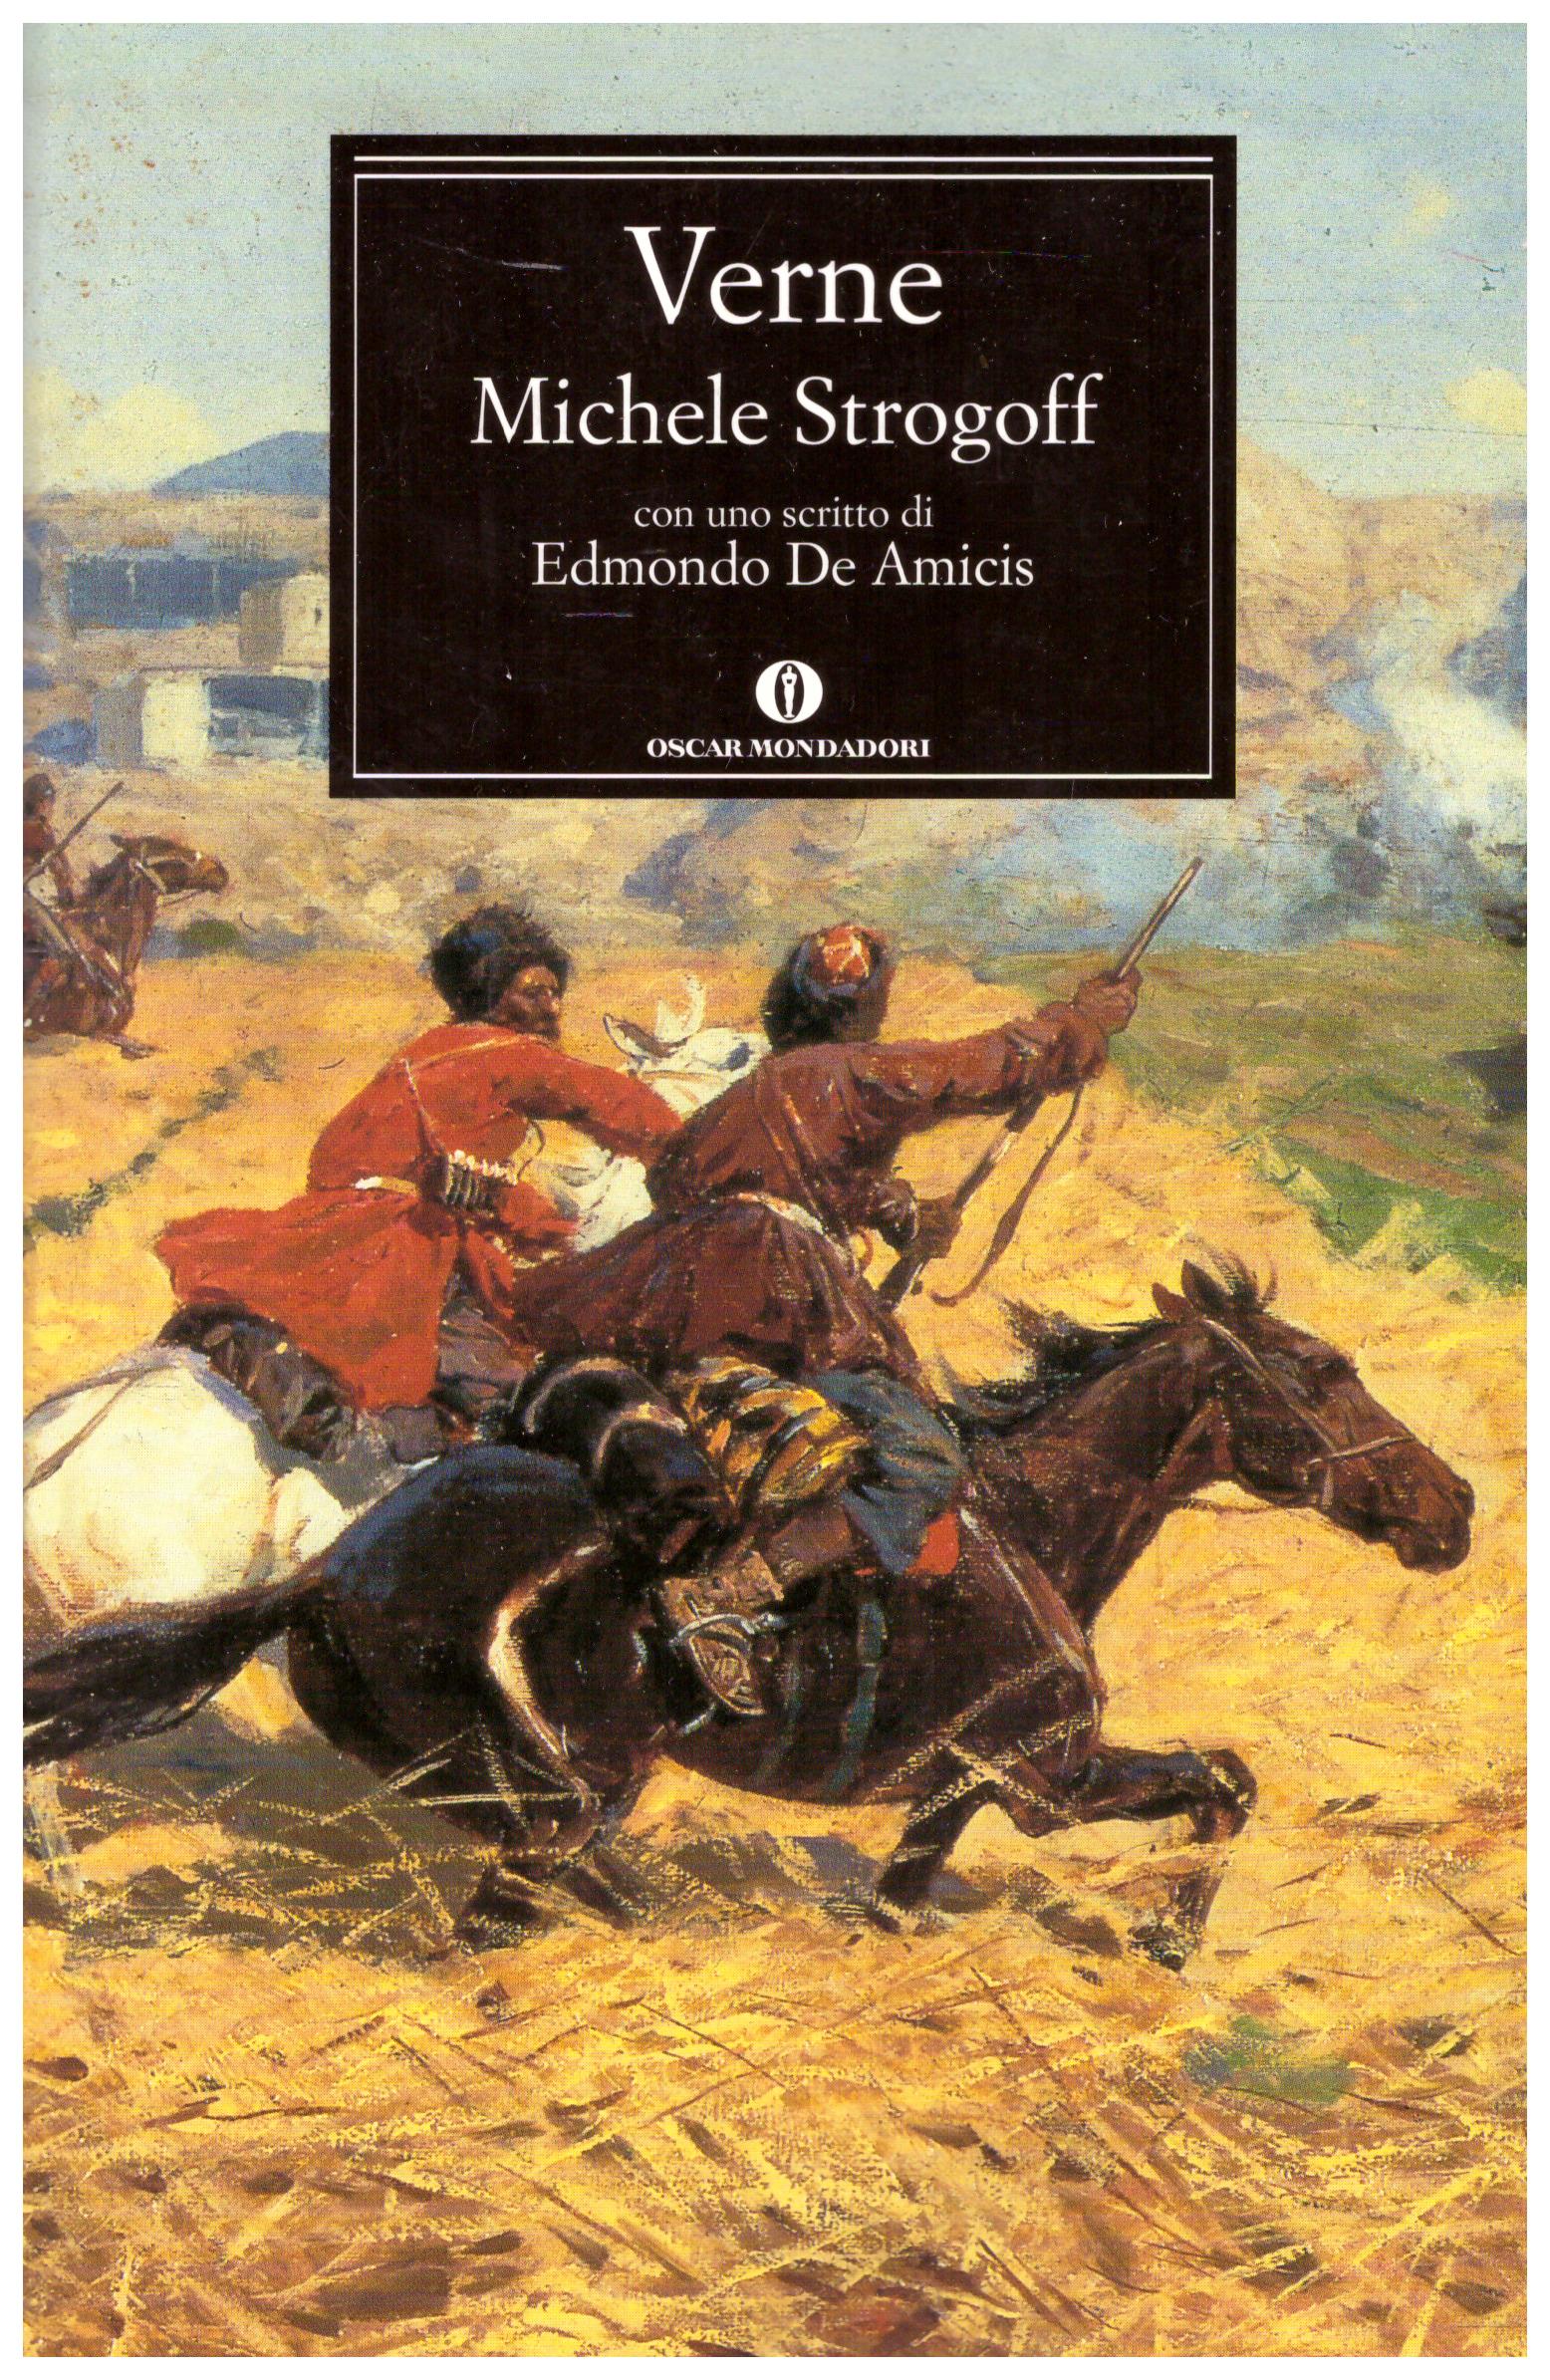 Titolo: Michele Strogoff Autore: Jules Verne Editore: oscar mondadori, 2011